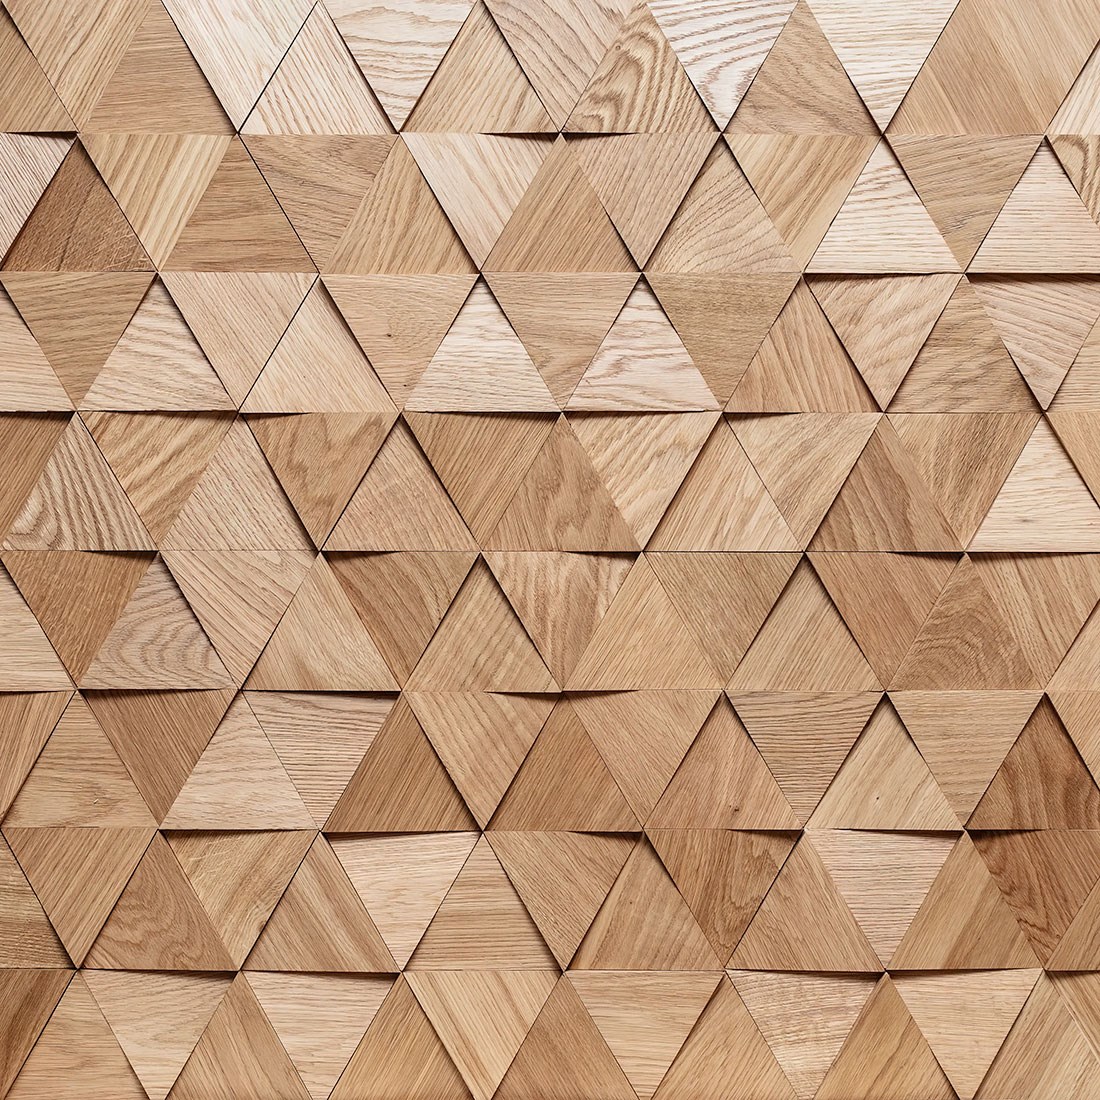 driehoekige houten vloer behang